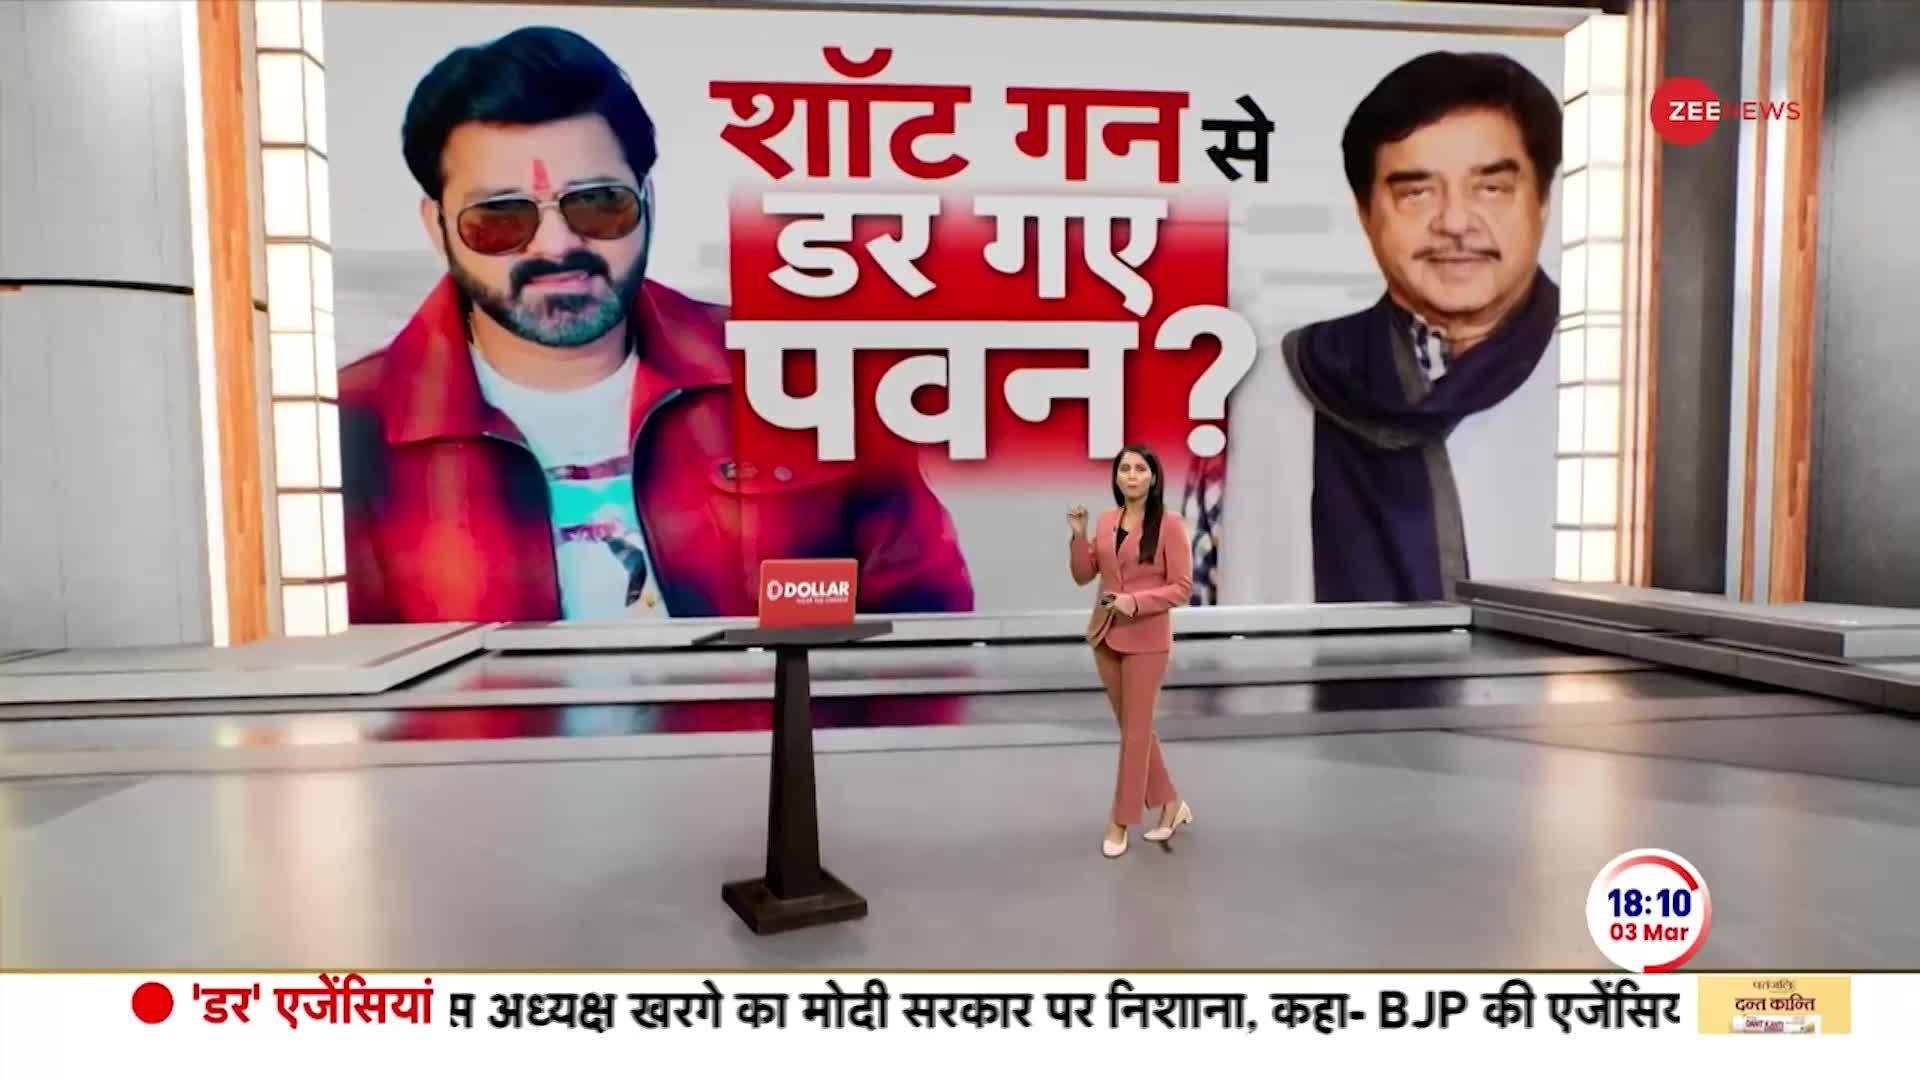 Deshhit: बंगाल में बीजेपी को बड़ा झटका, पवन सिंह ने चुनाव लड़ने से किया इनकार | Pawan Singh Returns BJP Ticket